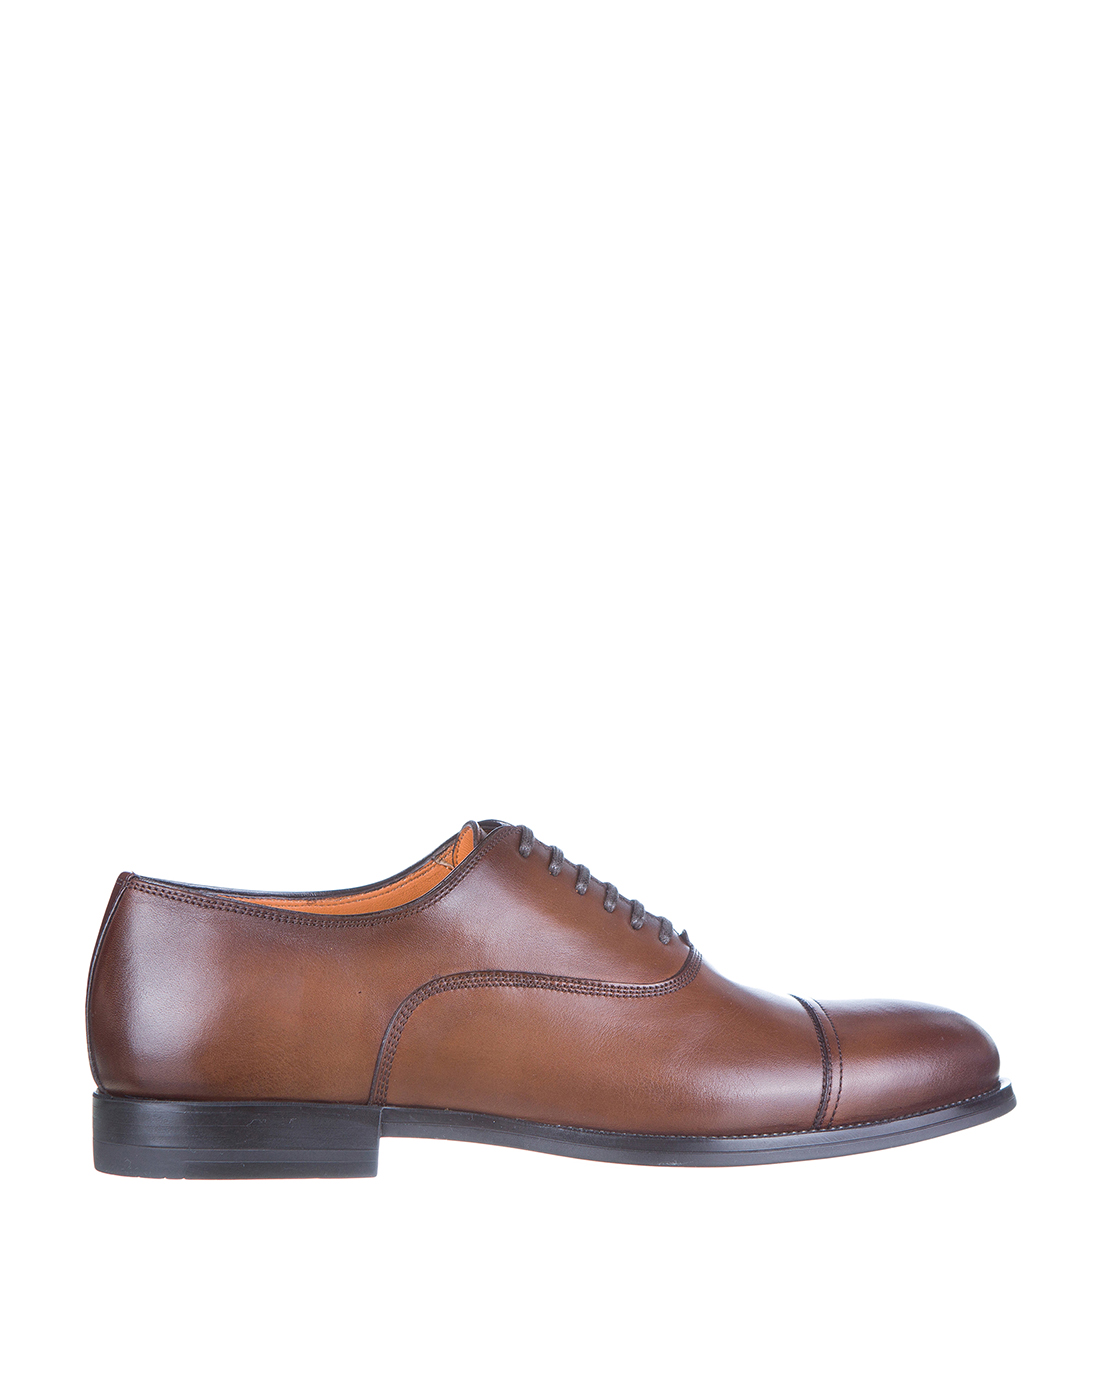 Туфли коричневые мужские Santoni SMGNG17286SMOICLBS52-1